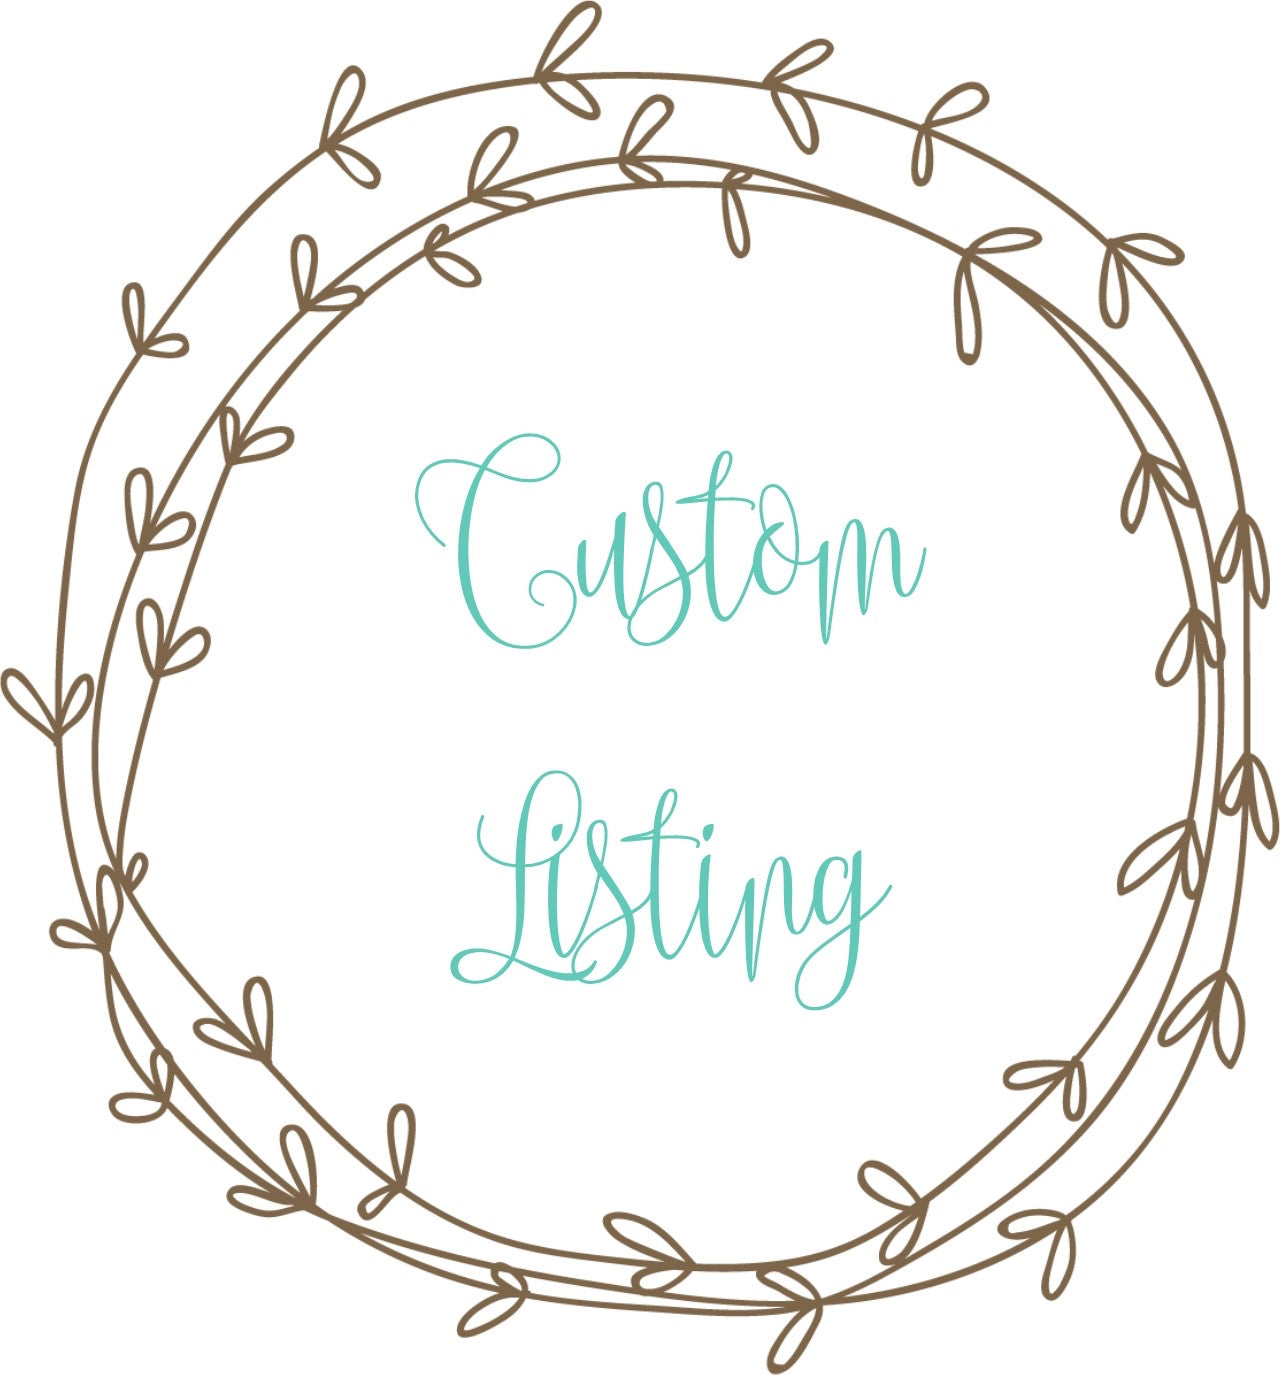 Custom listing for Erica